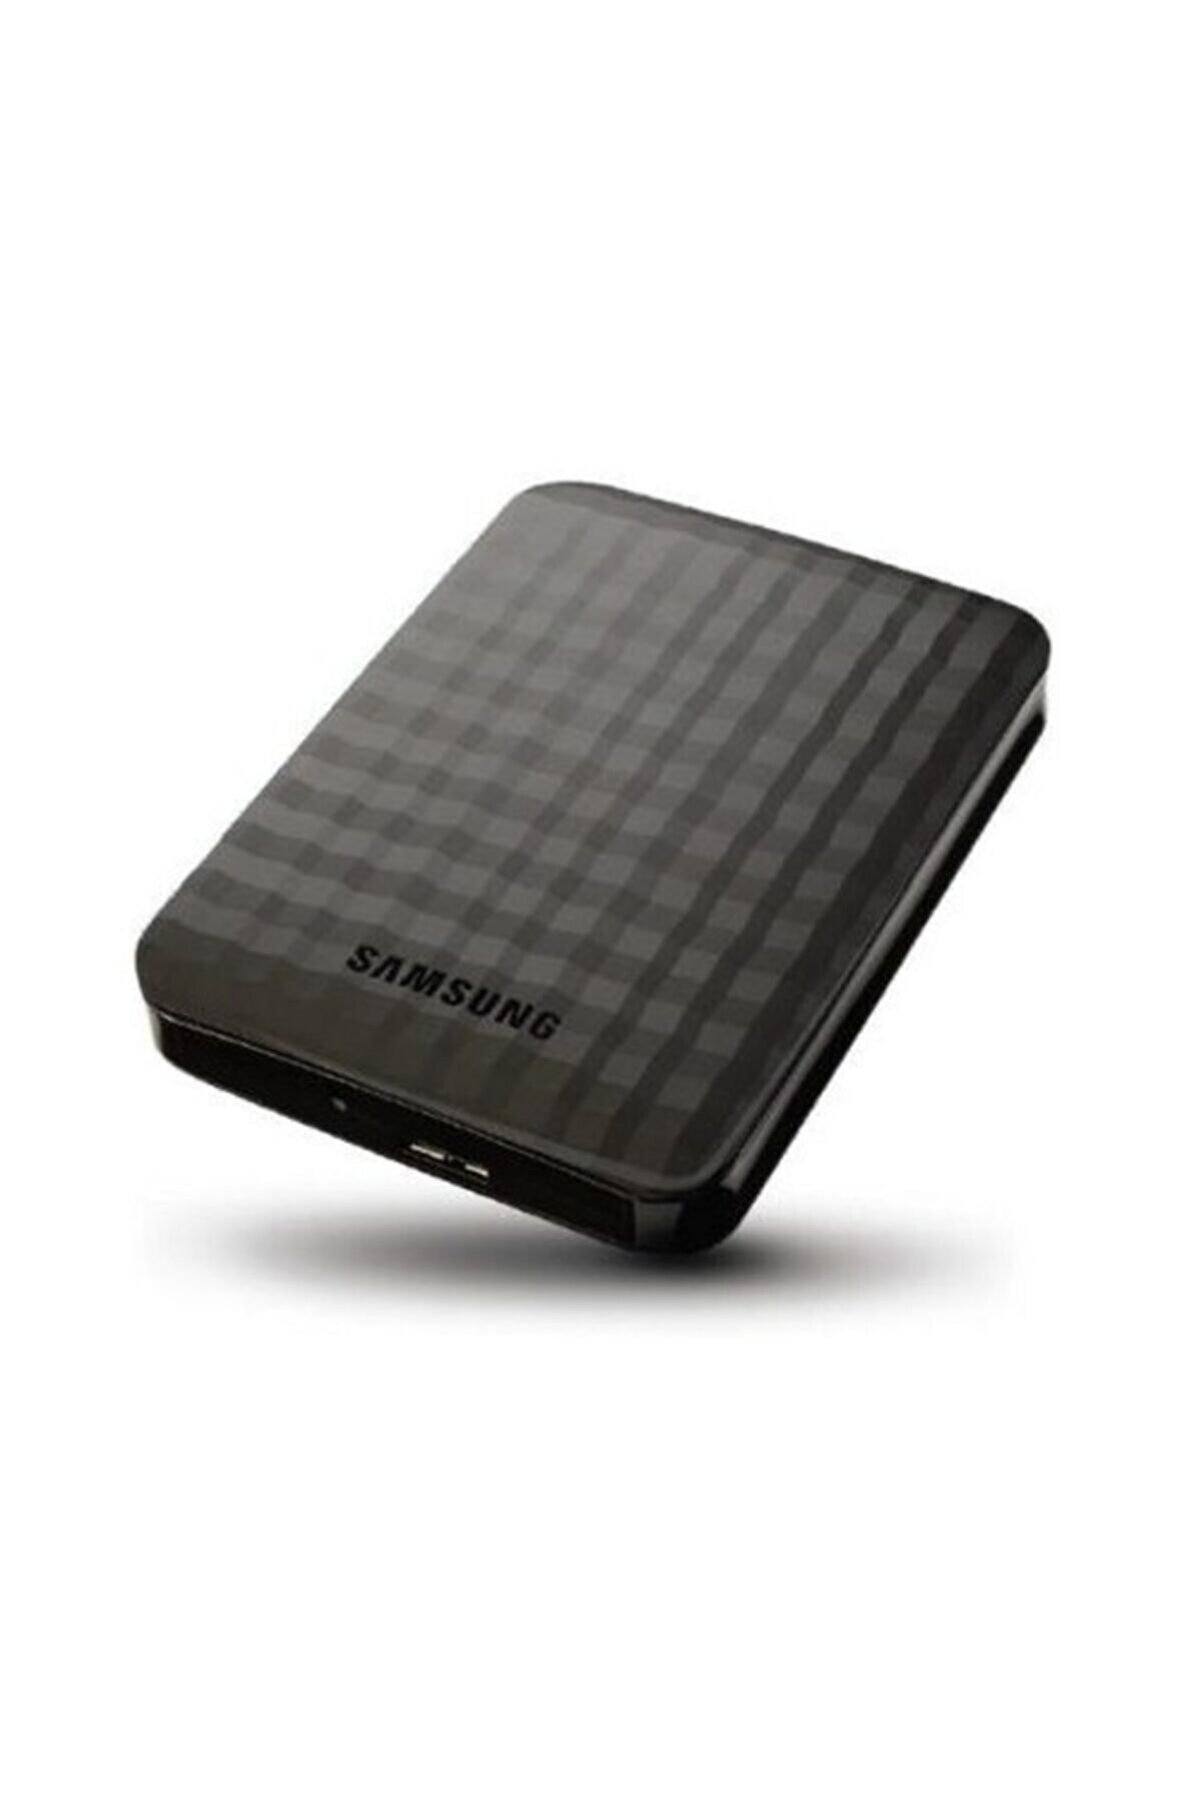 Samsung 500gb M3 2.5 Usb 3.0 Harici Taşınabilir Disk Siyah (stshx-m500tcb-g)